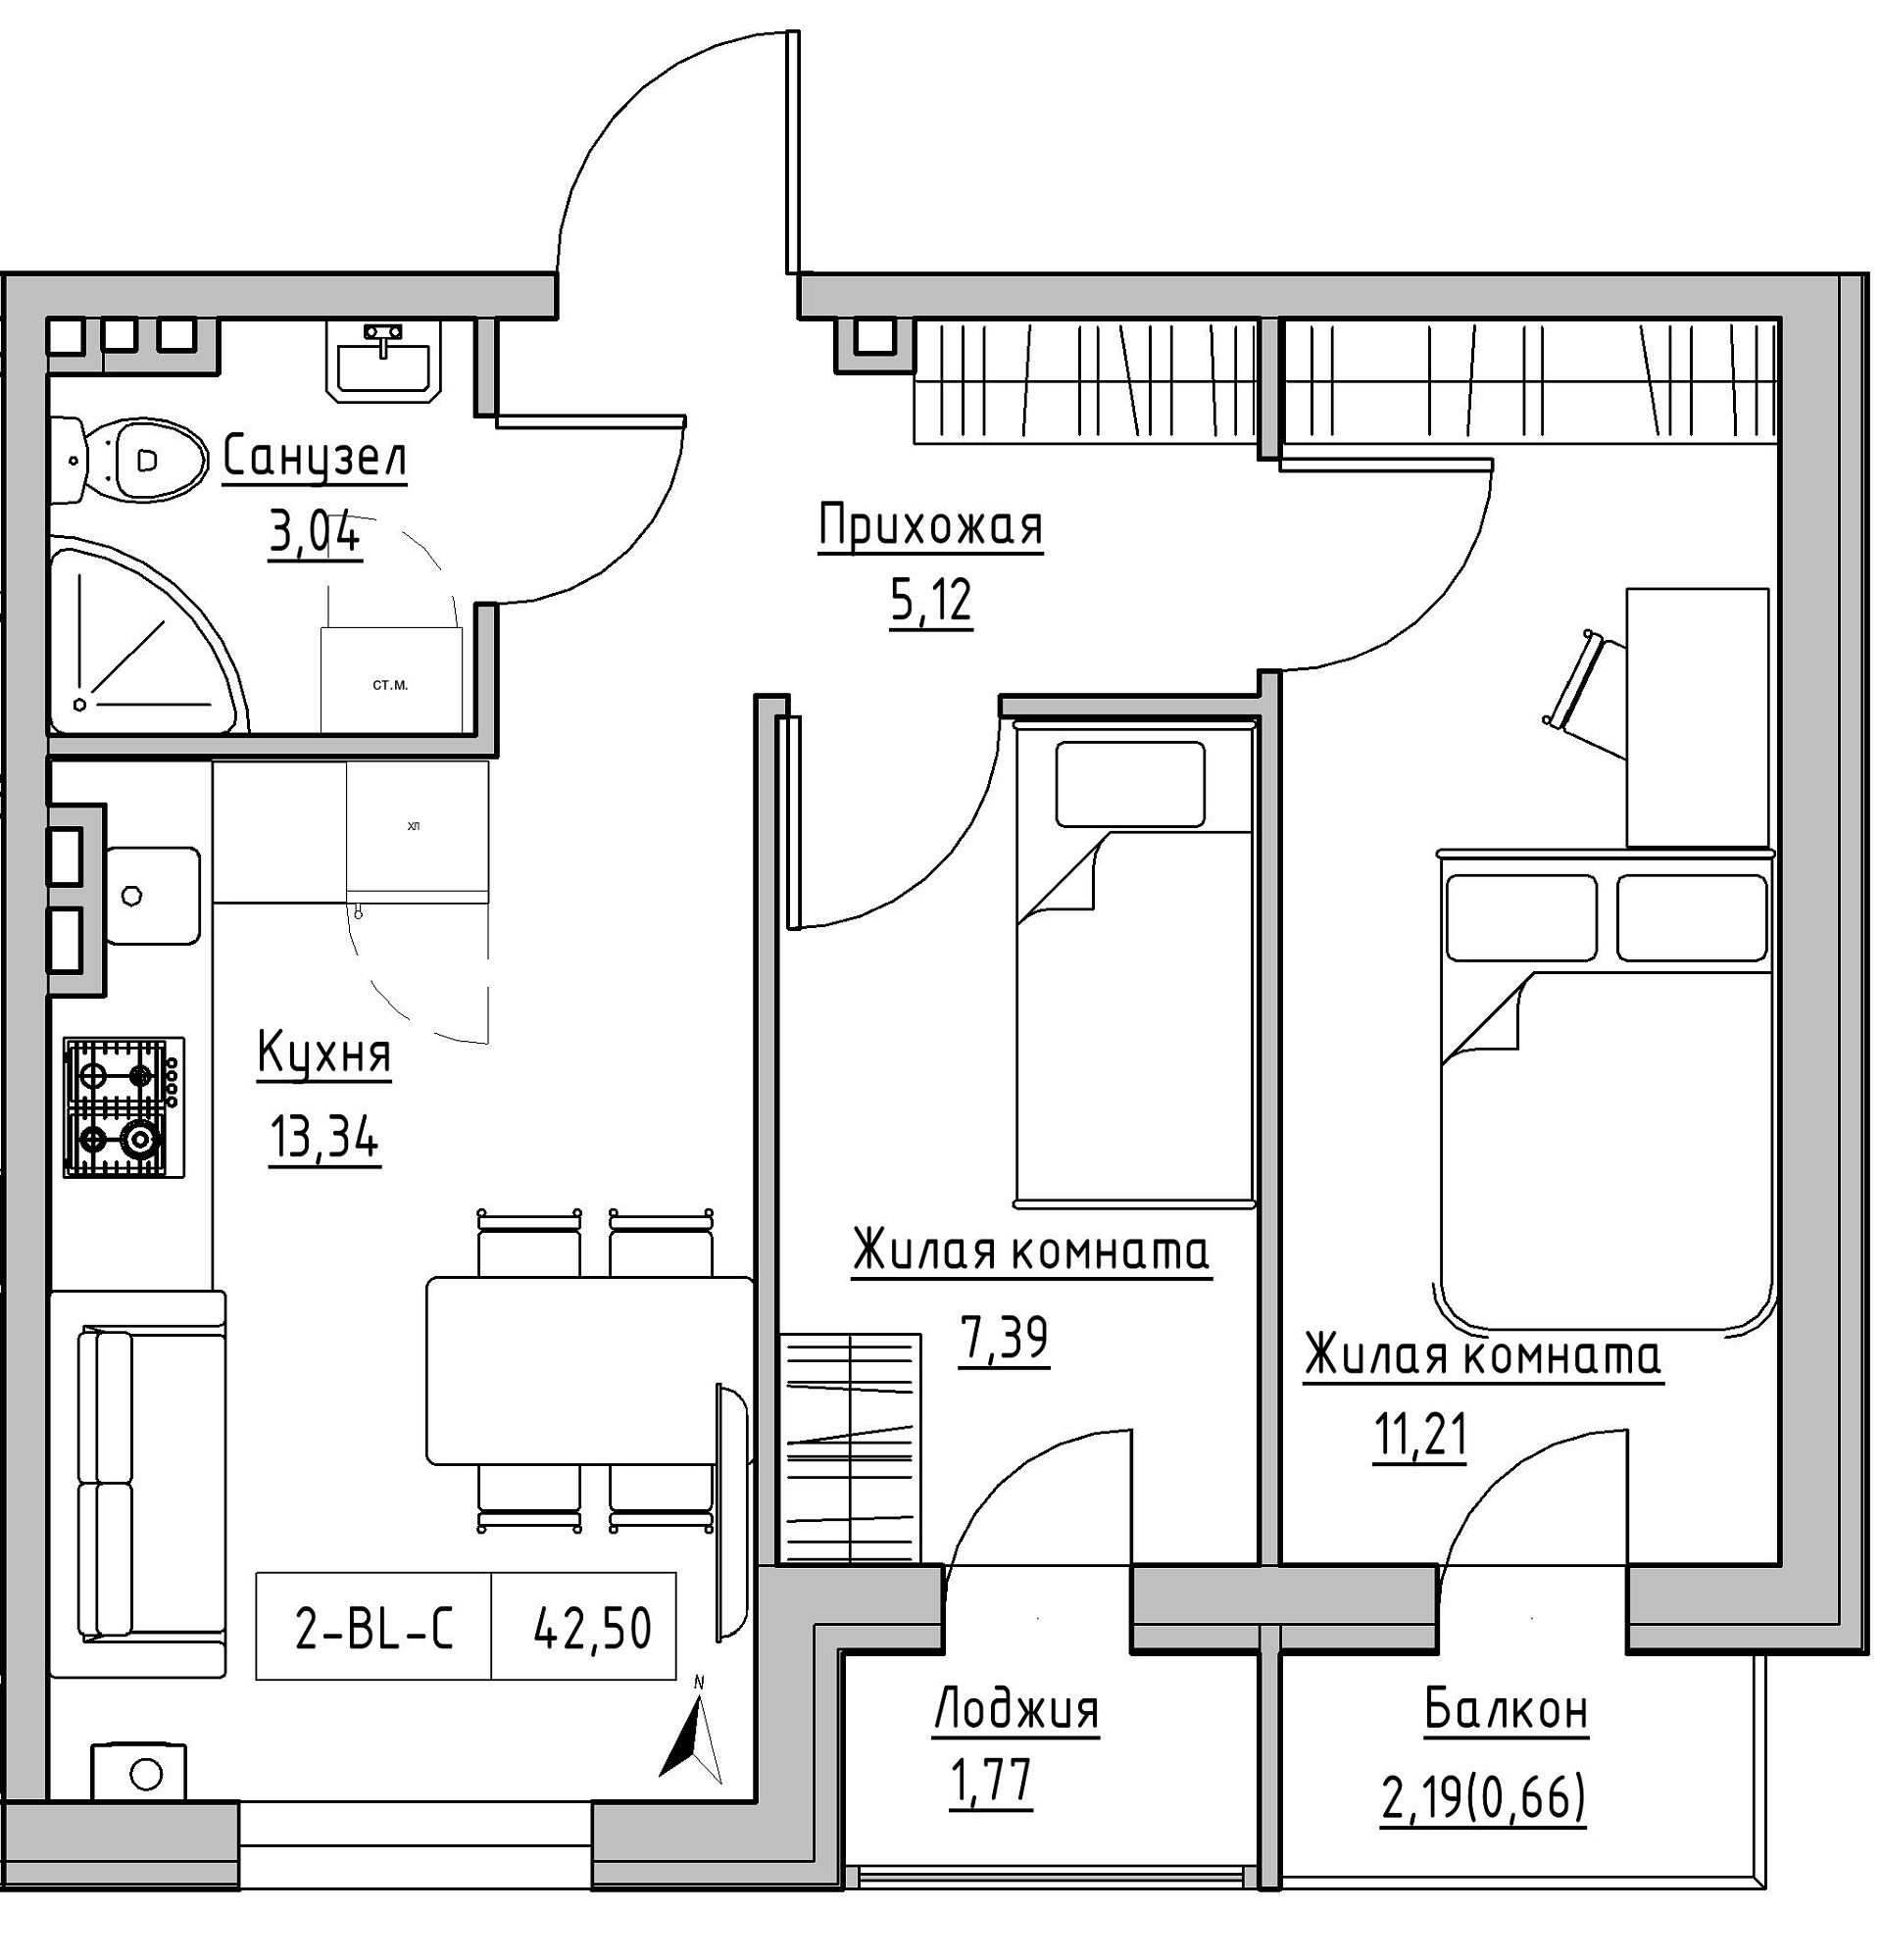 Планировка 2-к квартира площей 42.5м2, KS-024-02/0005.